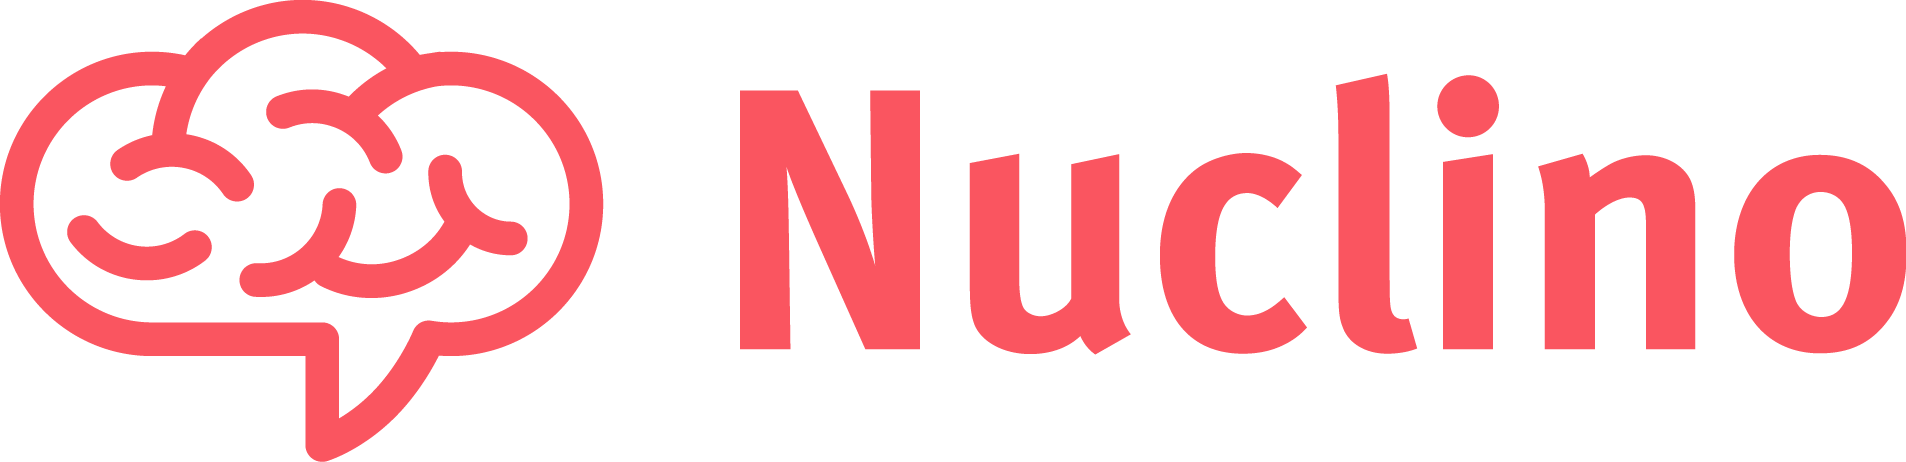 Nuclino